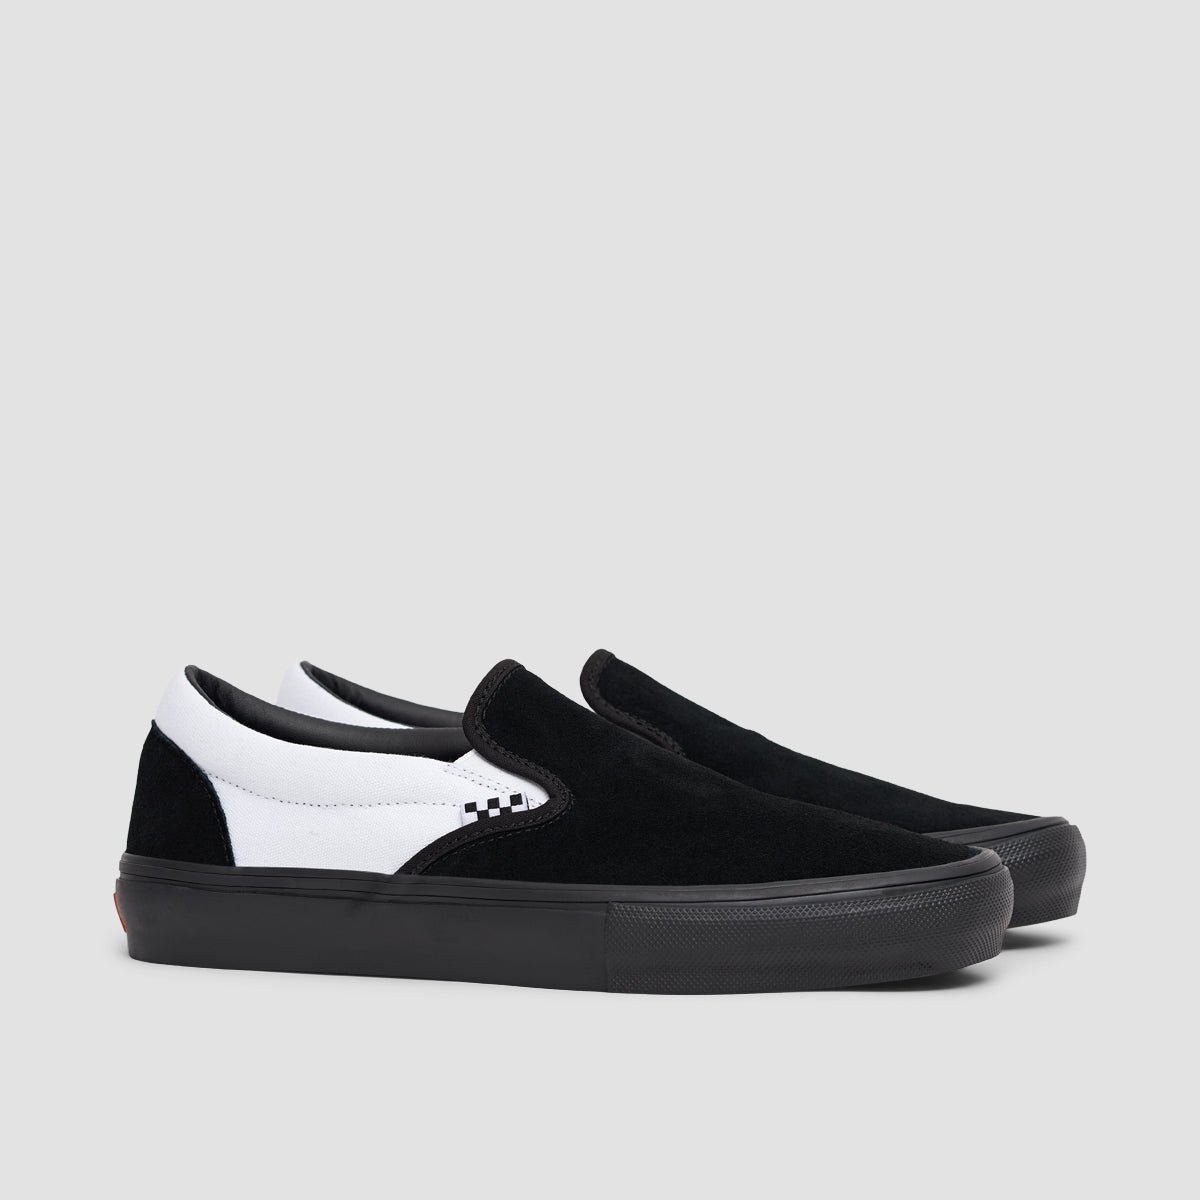 Vans Skate Slip-On Shoes - Black/Black/White